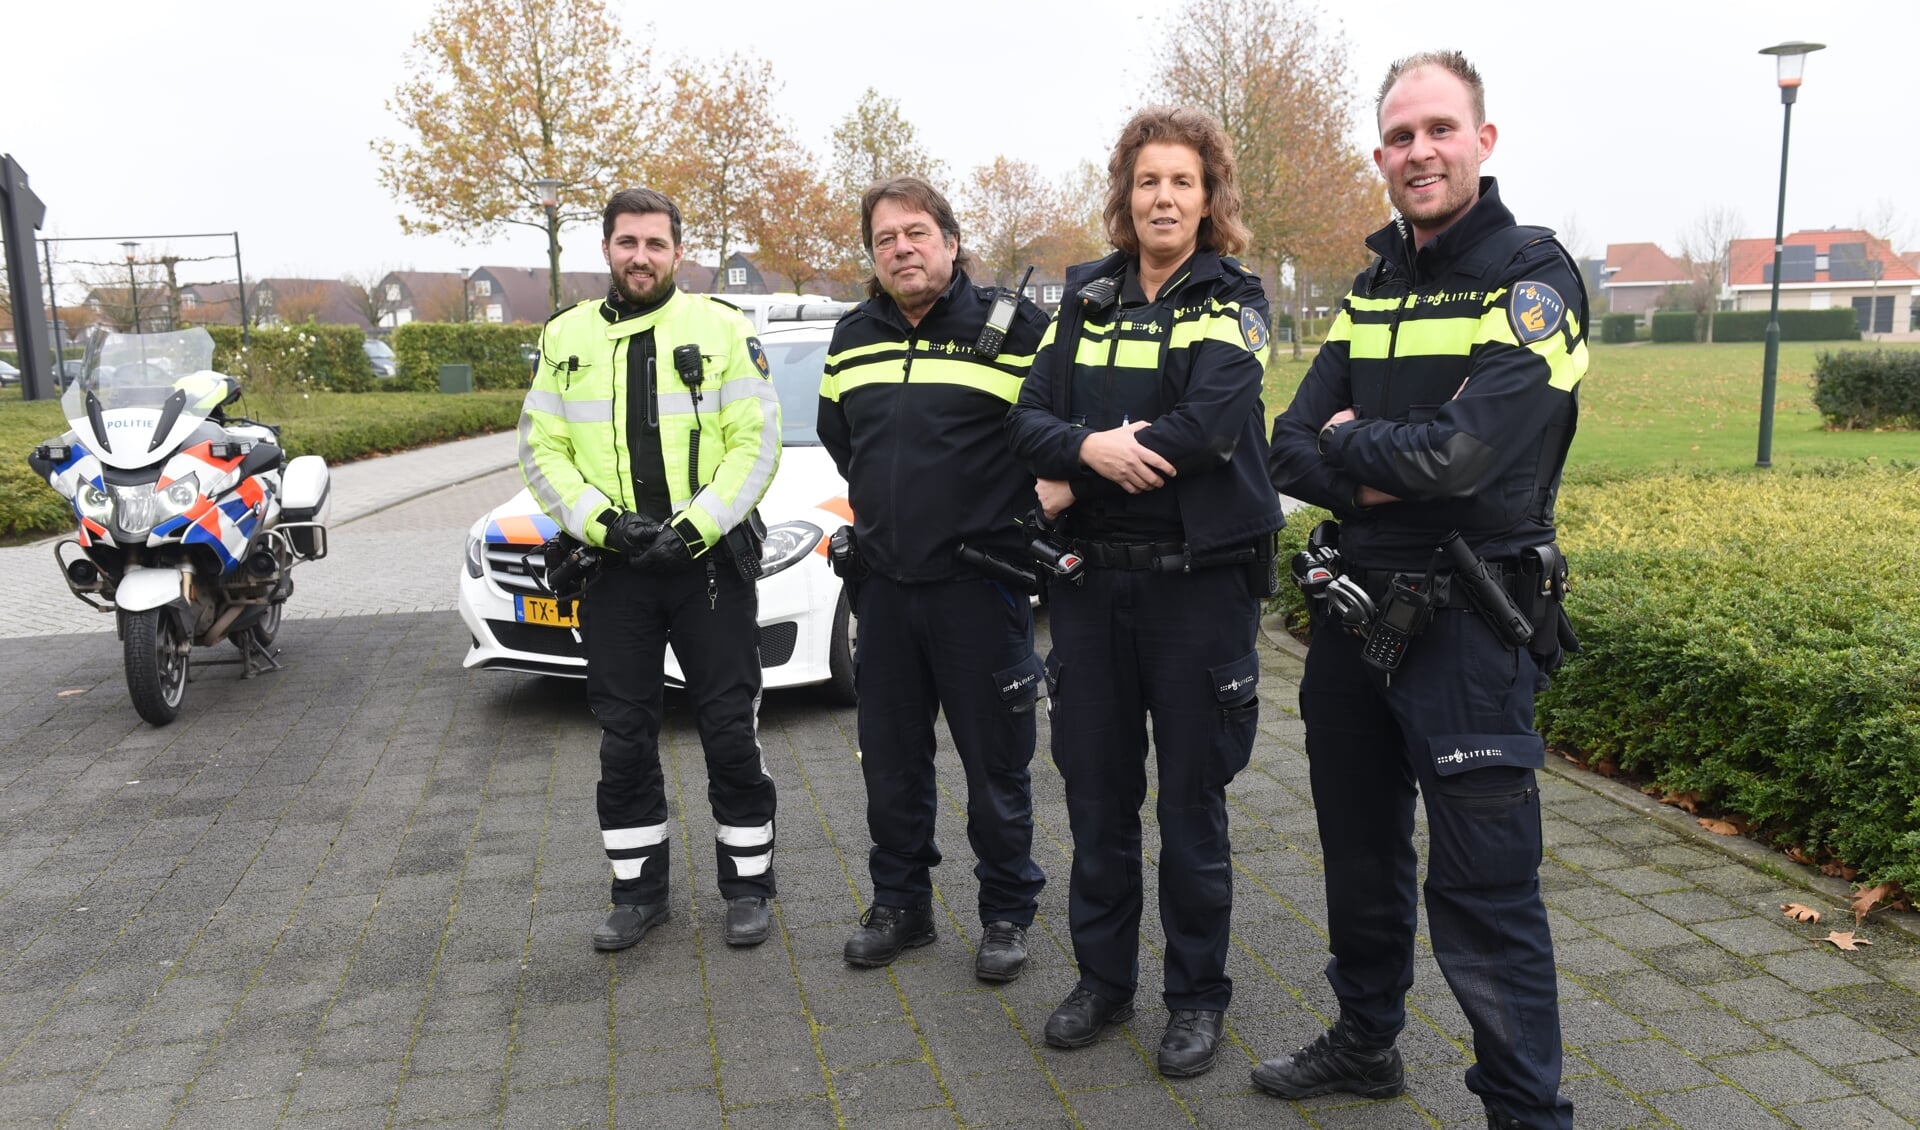 Mark Groefsema, Nico van den Wijngaard, Suzanne Kastelijn en Jordy Ellerkamp. De laatste is een nieuwe wijkagent.